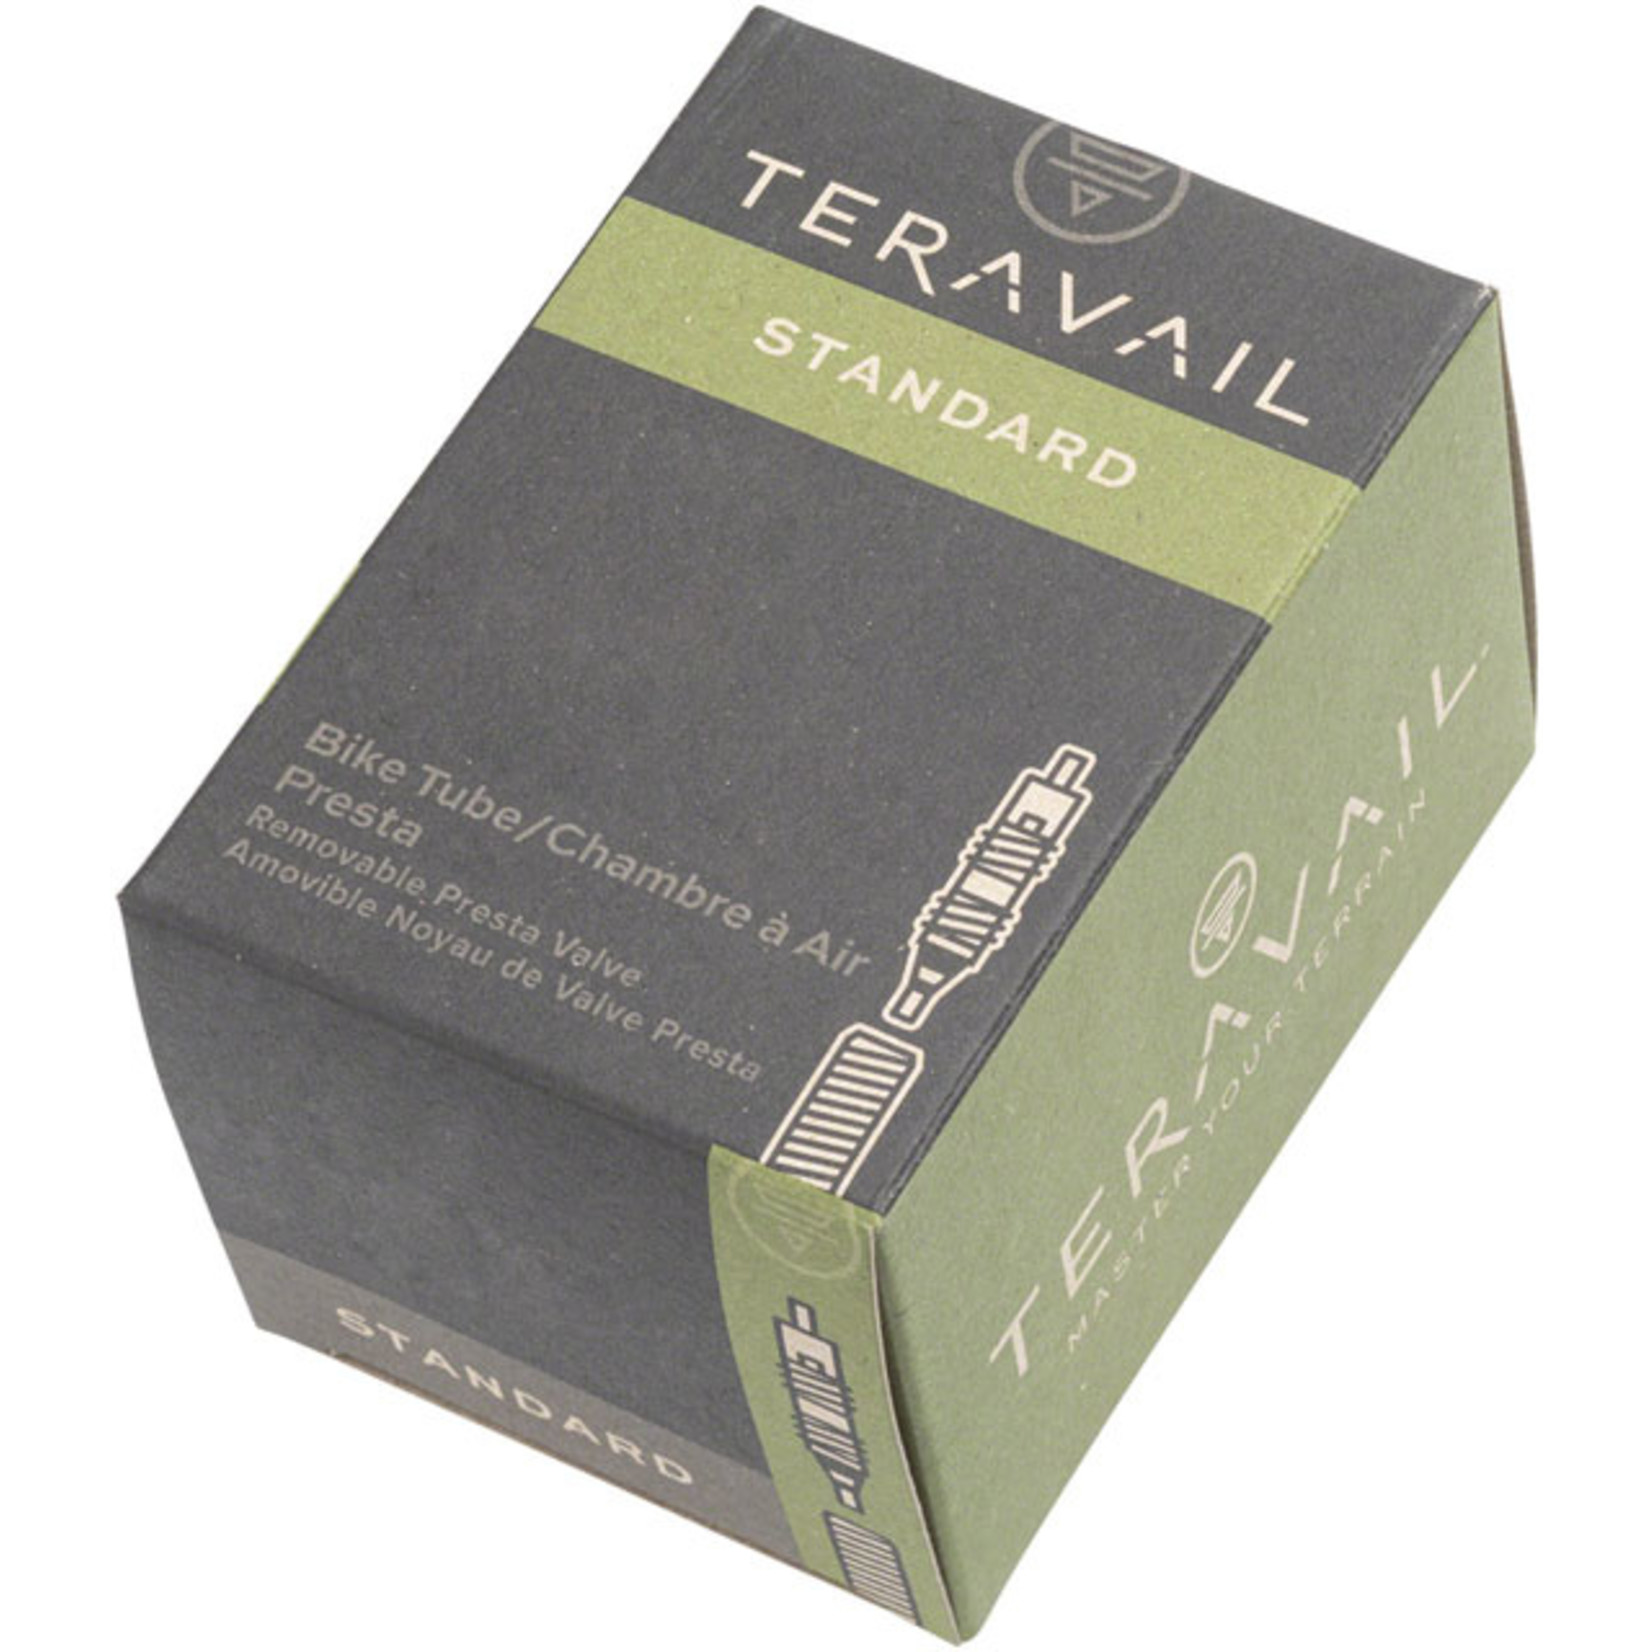 Teravail Teravail Standard Presta Tube - 27.5x2.40-2.80 48mm